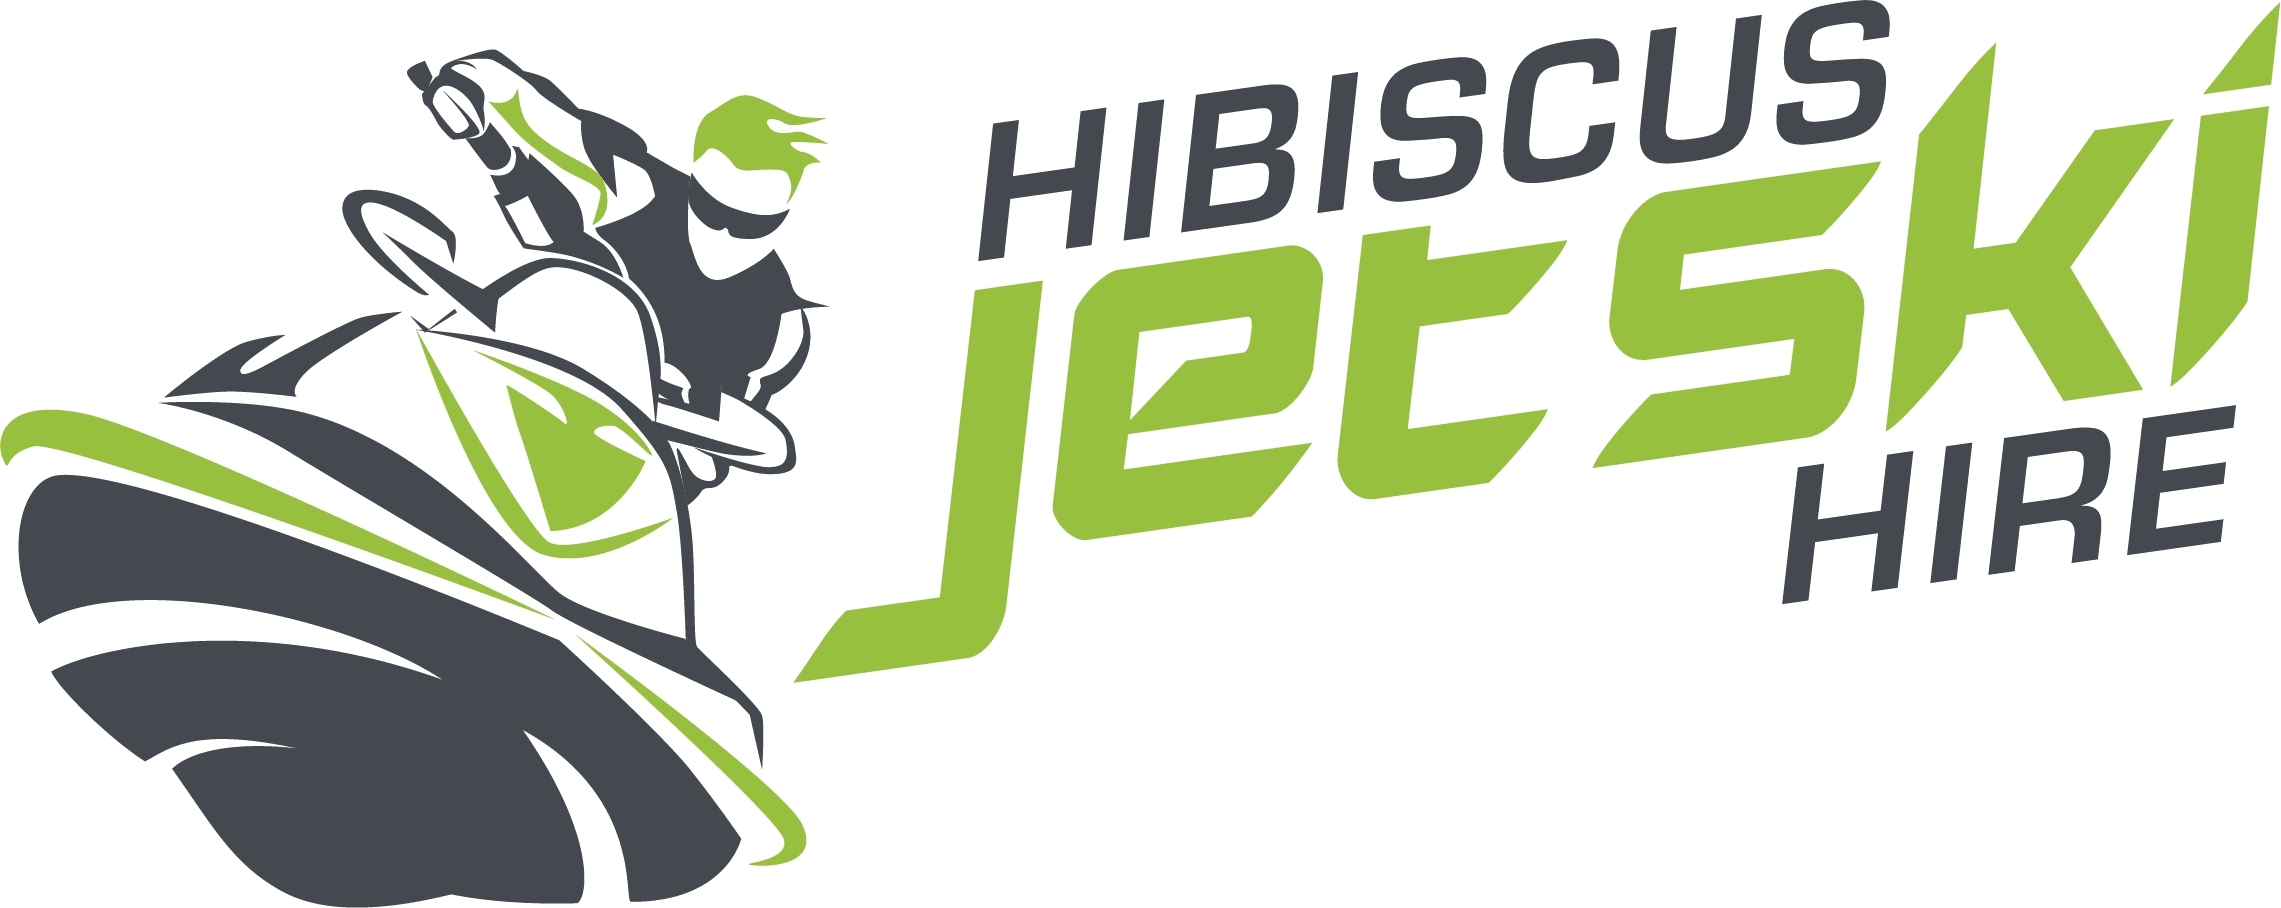 Hibiscus JetSki Hire